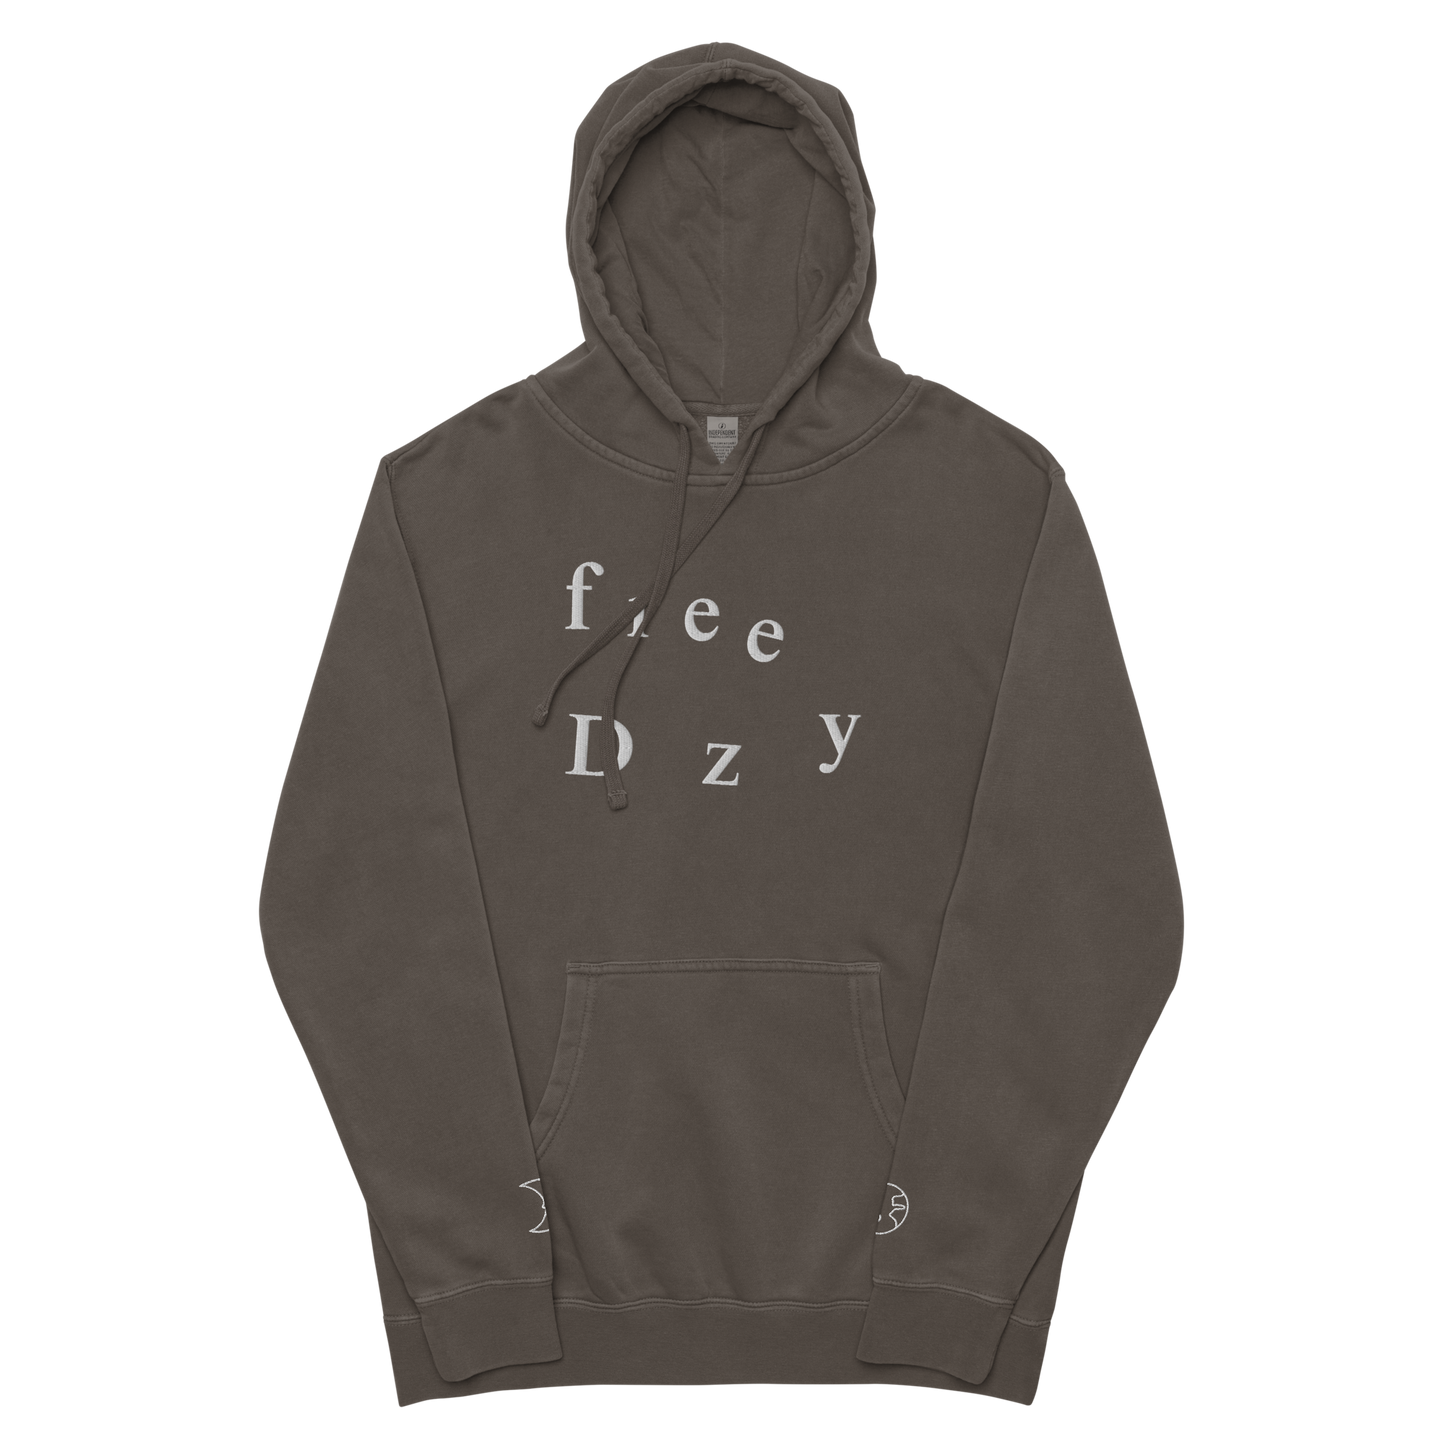 FREE DOOZY - Unisex pigment-dyed hoodie